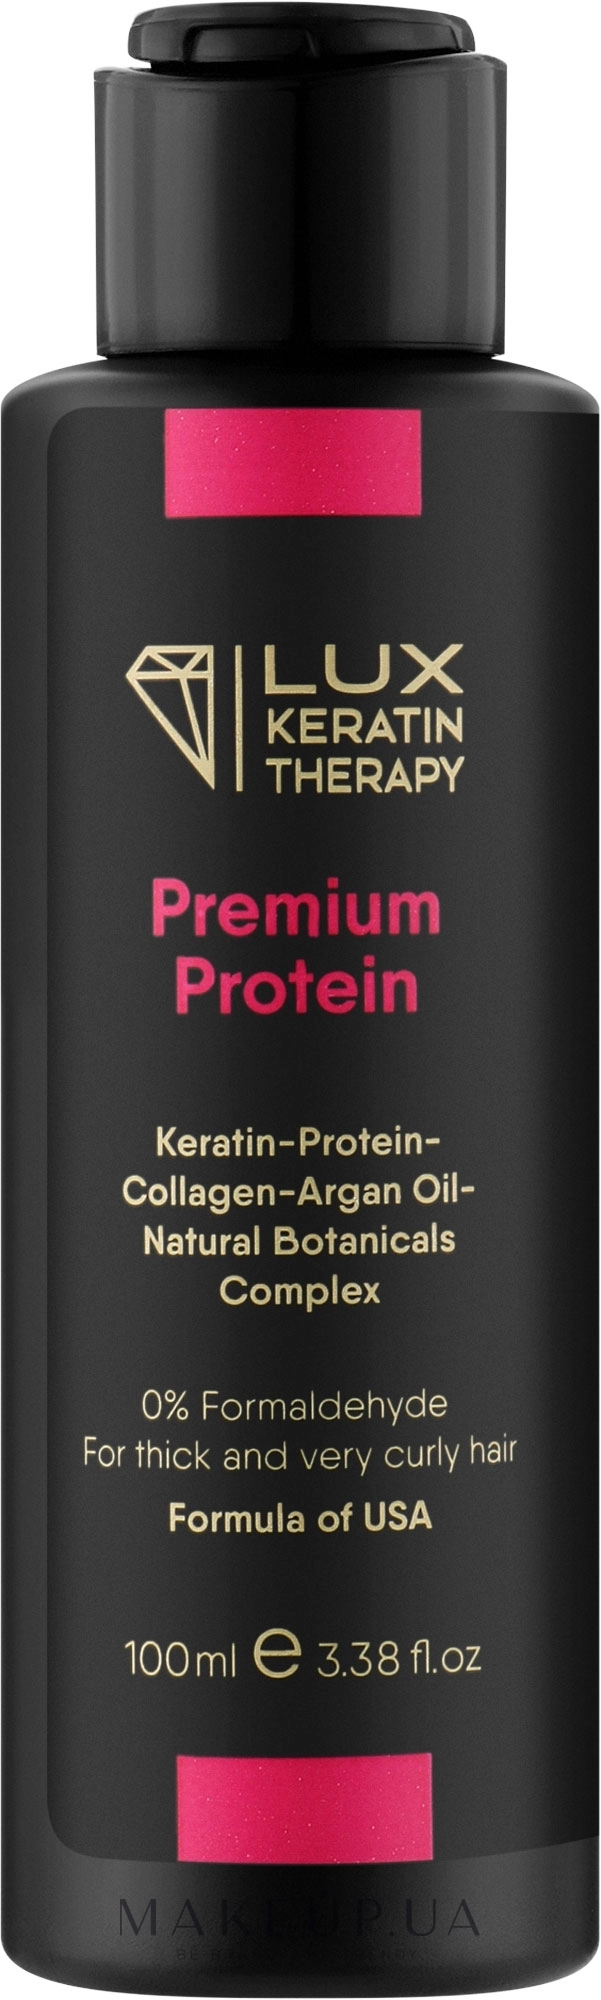 Средство для выпрямления волос - Lux Keratin Therapy Premium Protein, 100 мл - фото N1